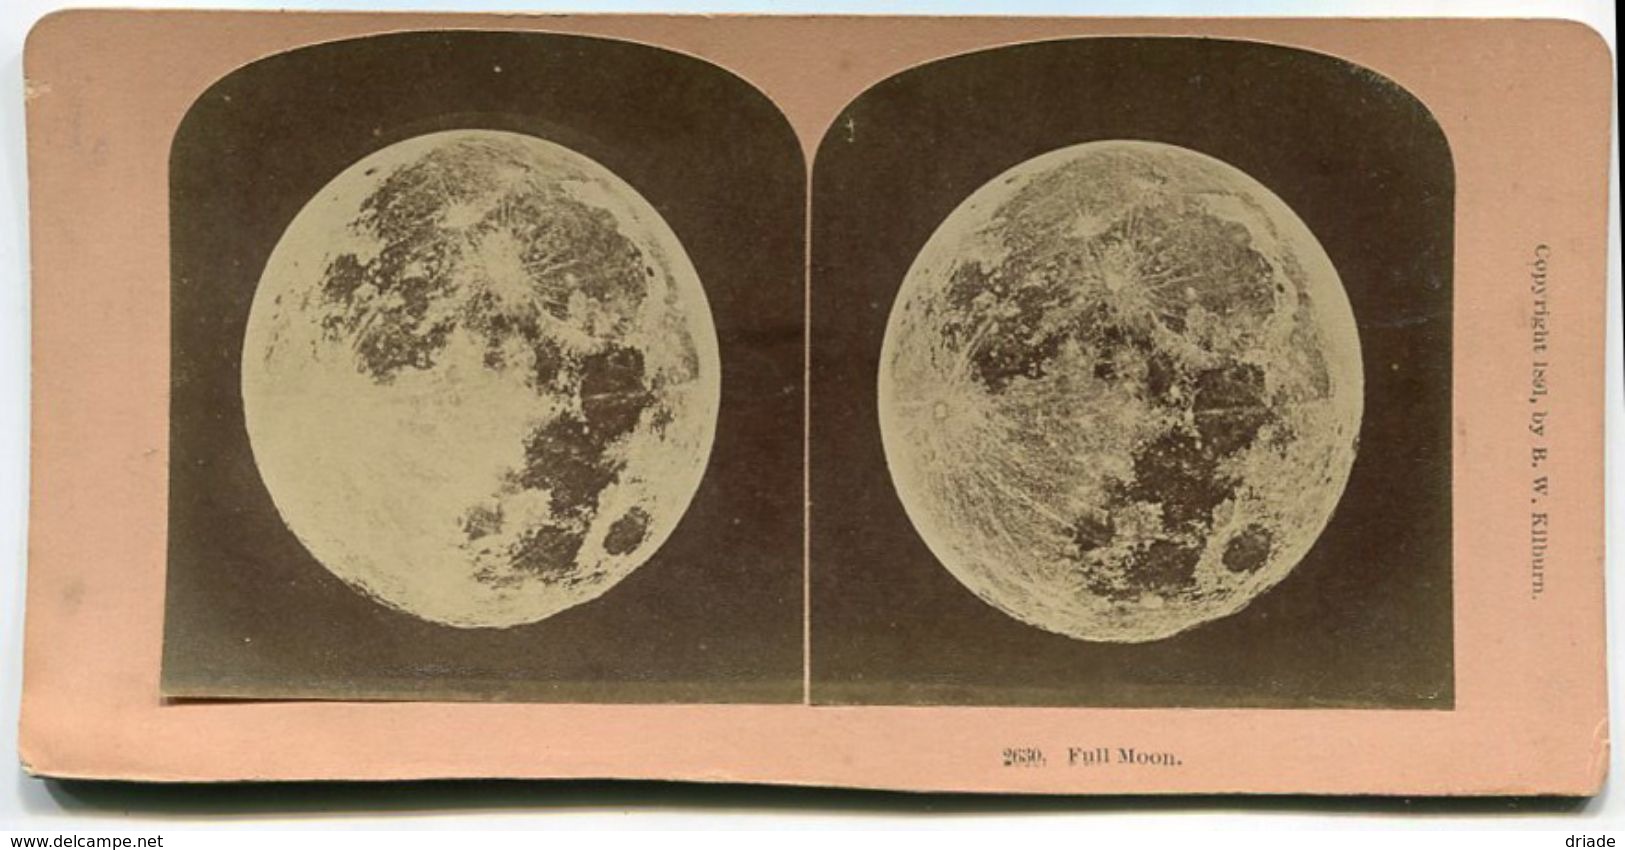 FOTO STEREOSCOPICA FULL MOON ANNO 1891 LUNA PIENA PHOTO B. W. KILBURN LITTLETON , N. H. - Stereoscopi